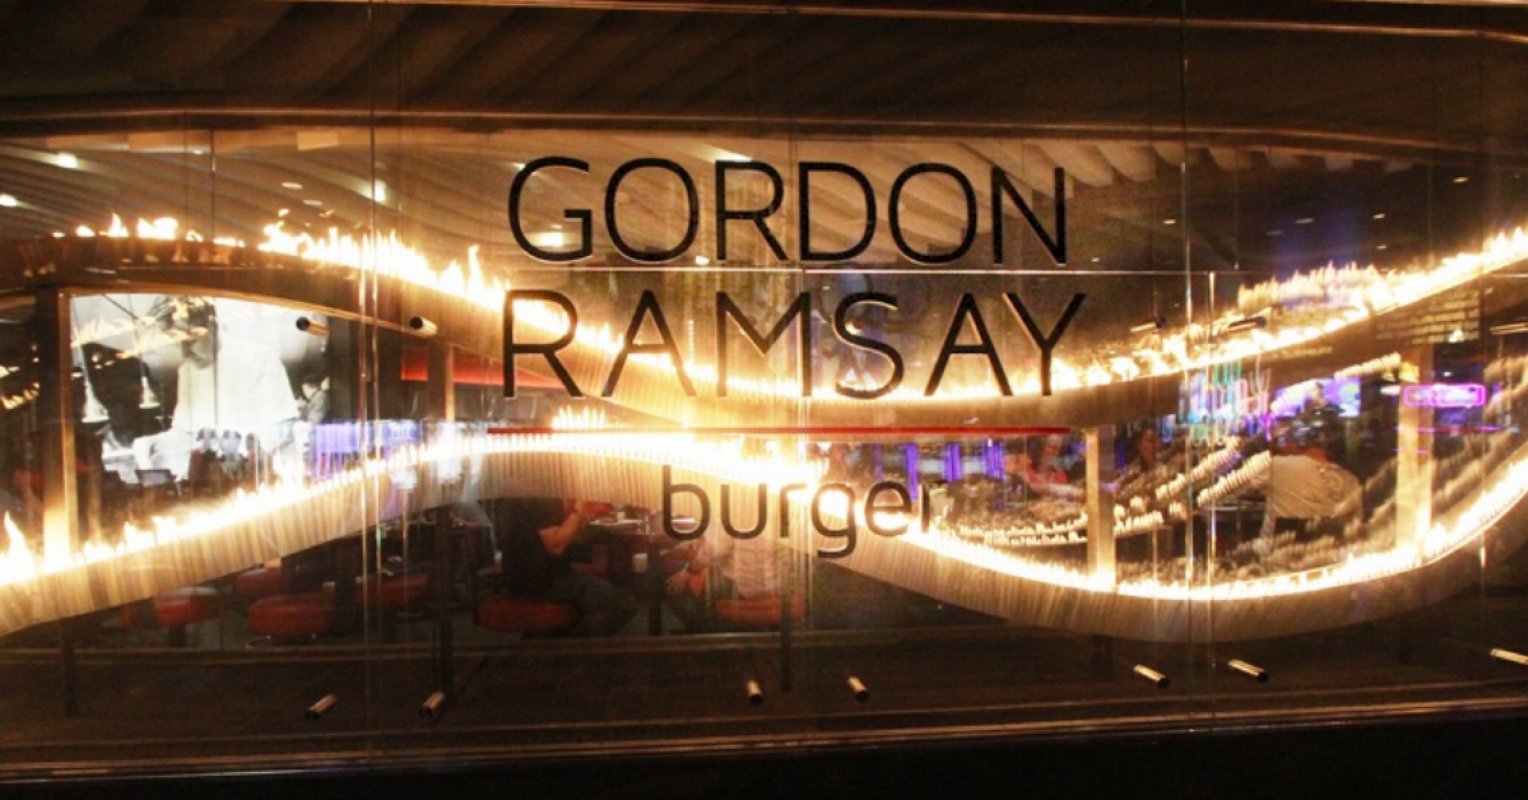 Gordon Ramsay Street Burger 英國再開分店